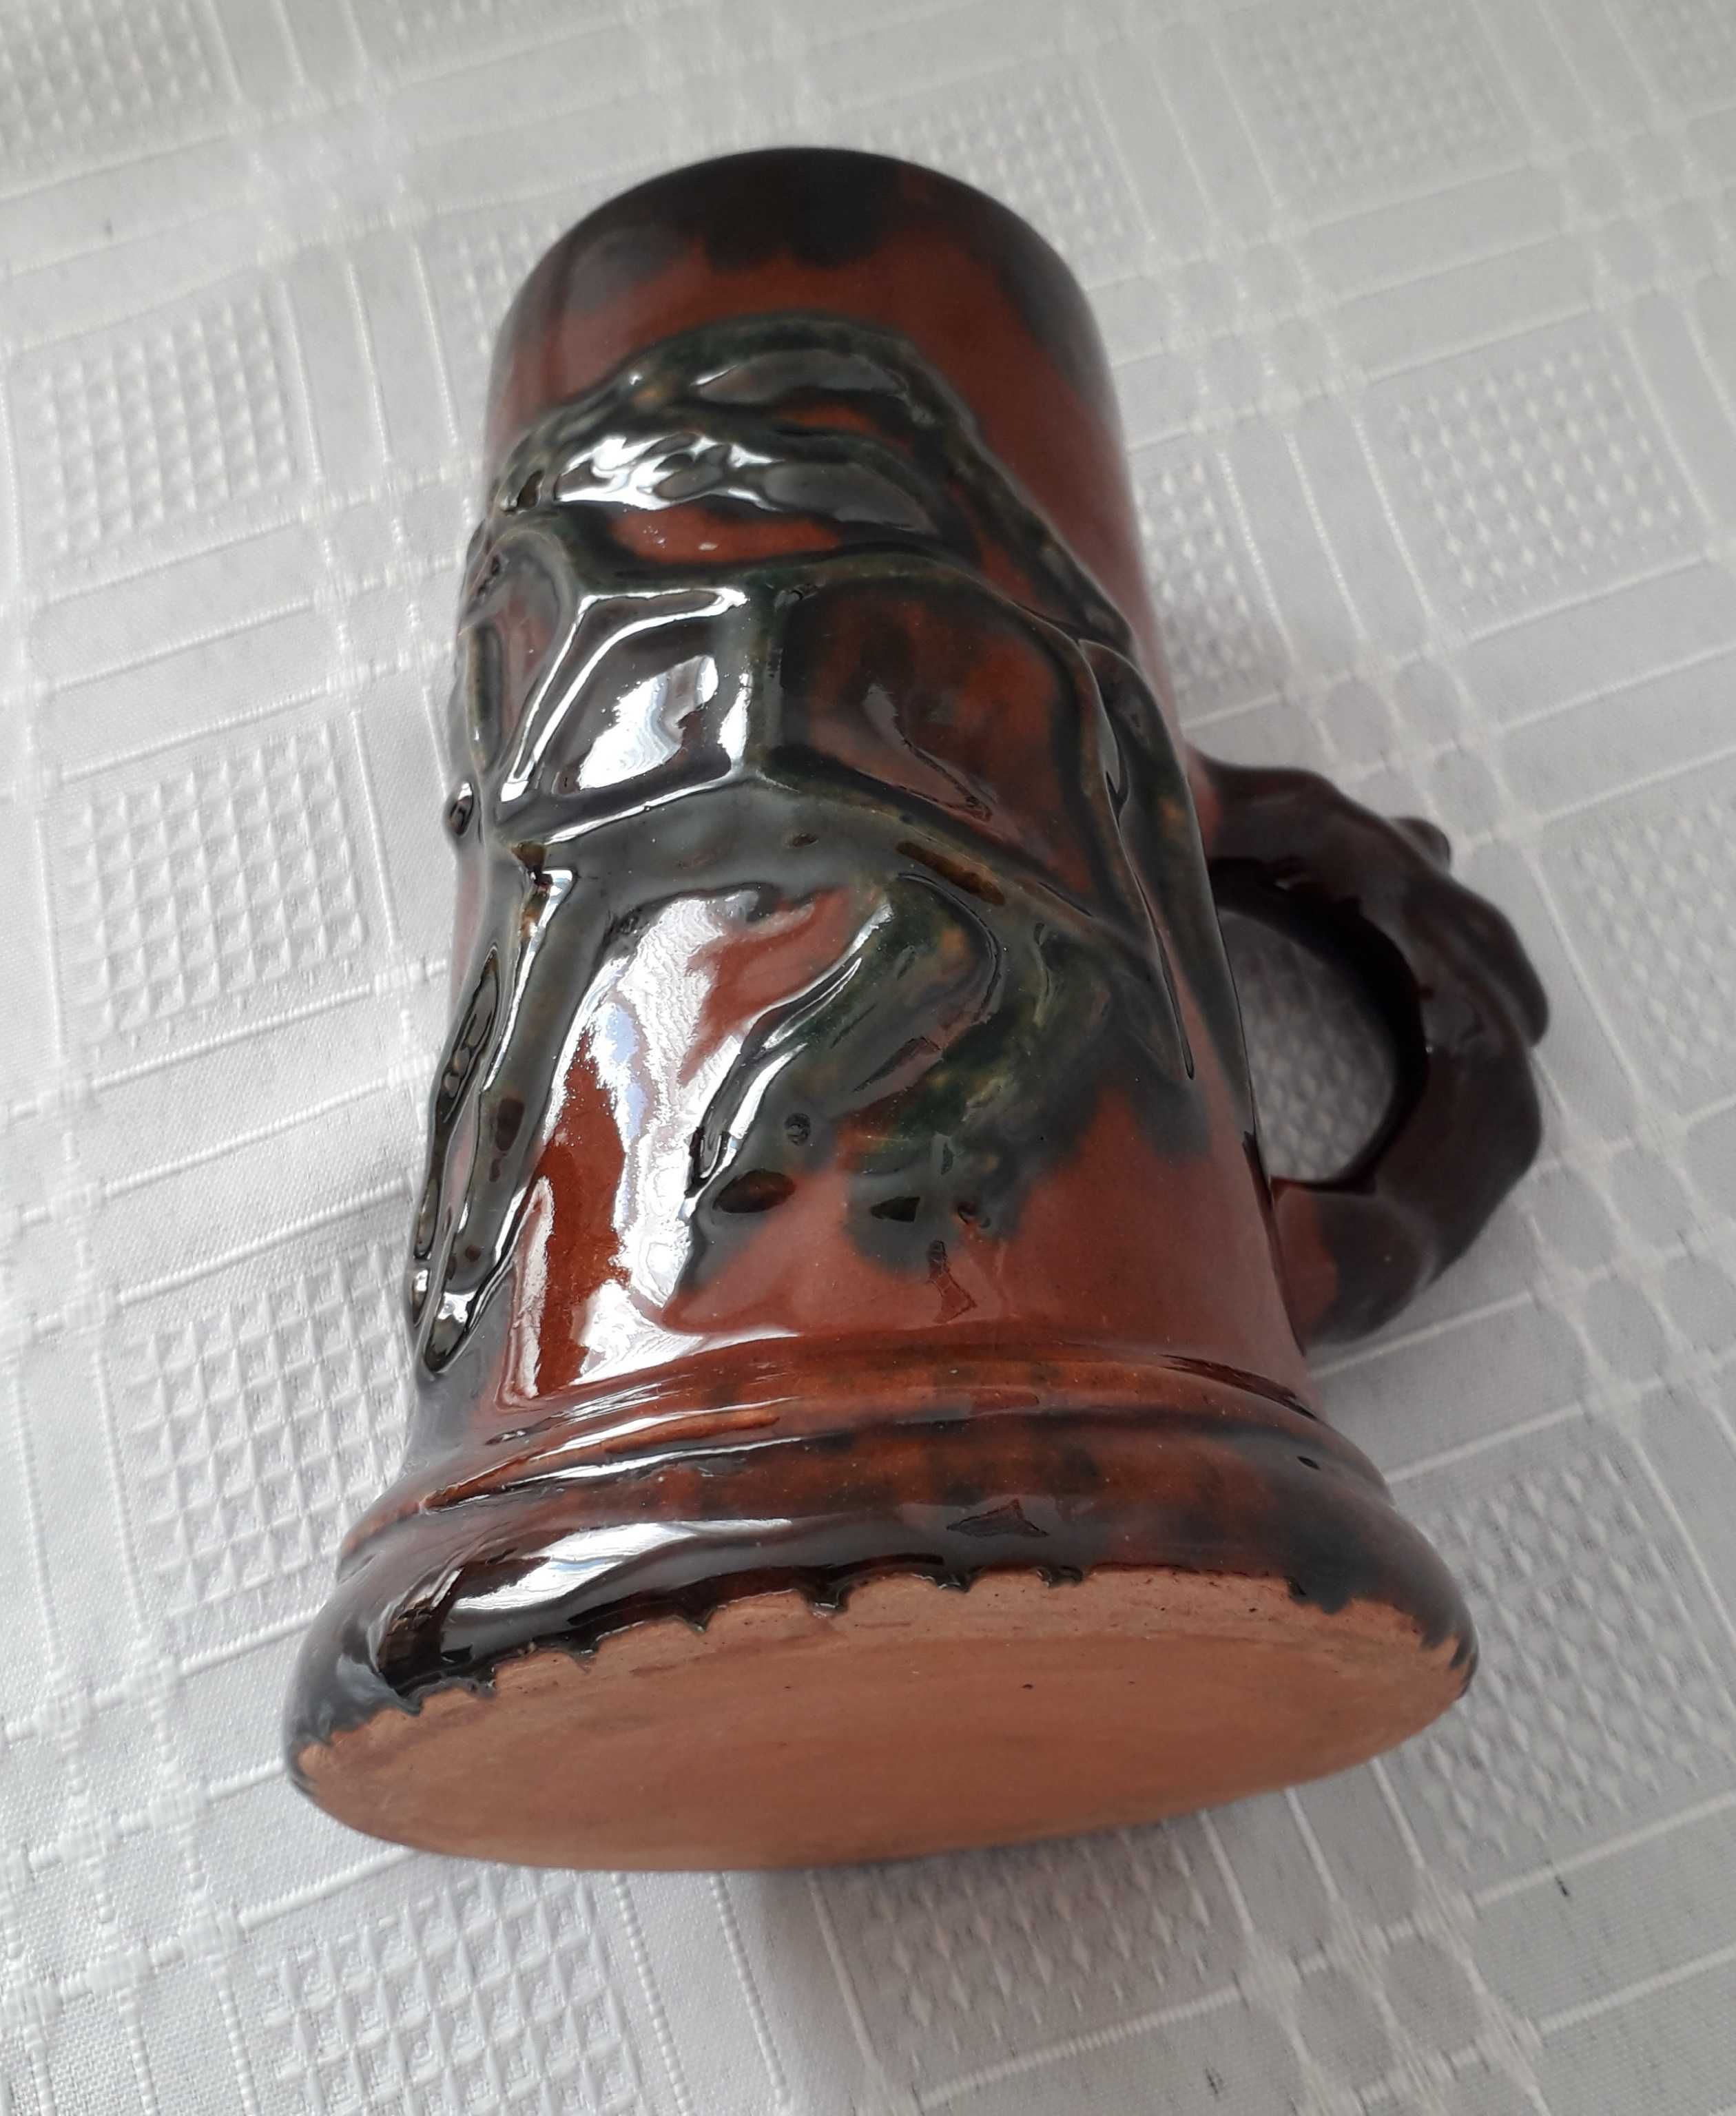 KUFEL ceramiczny, zdobiony z okresu PRL